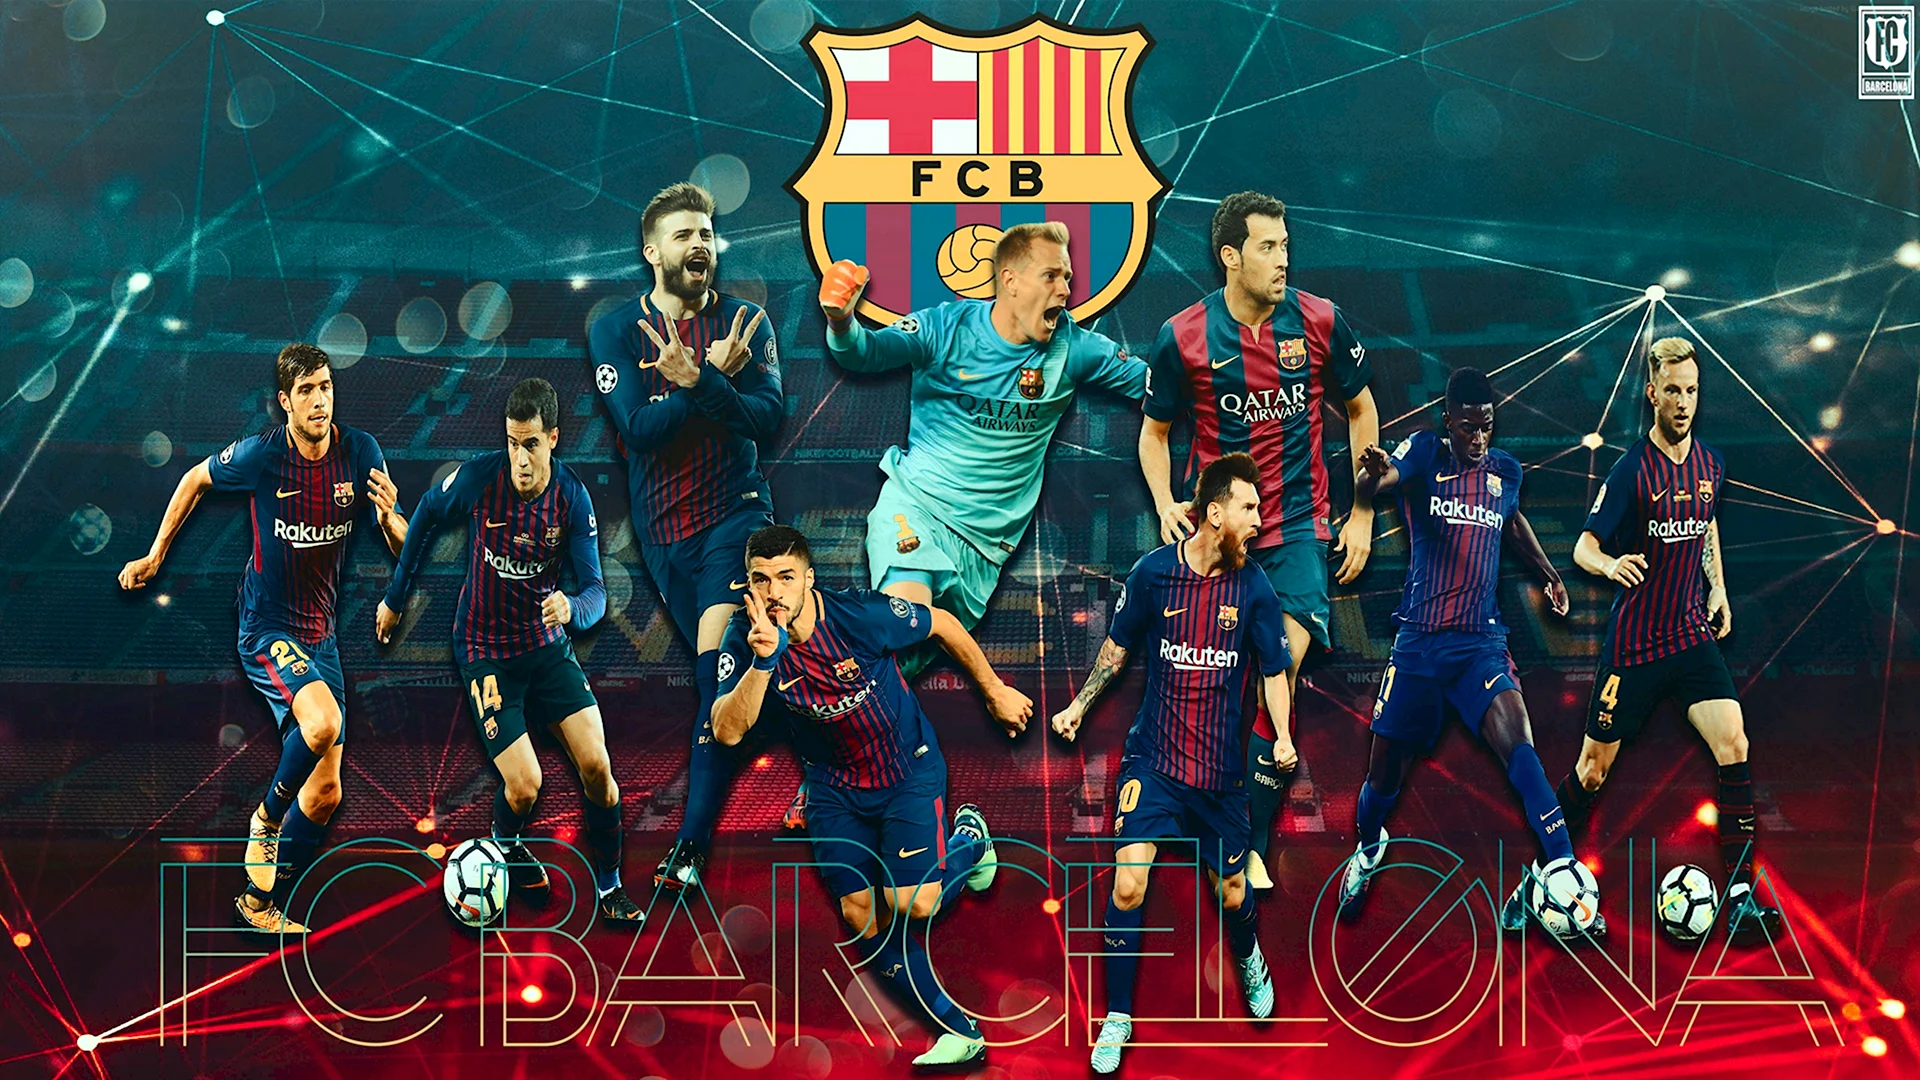 Барселона футбольный клуб обои